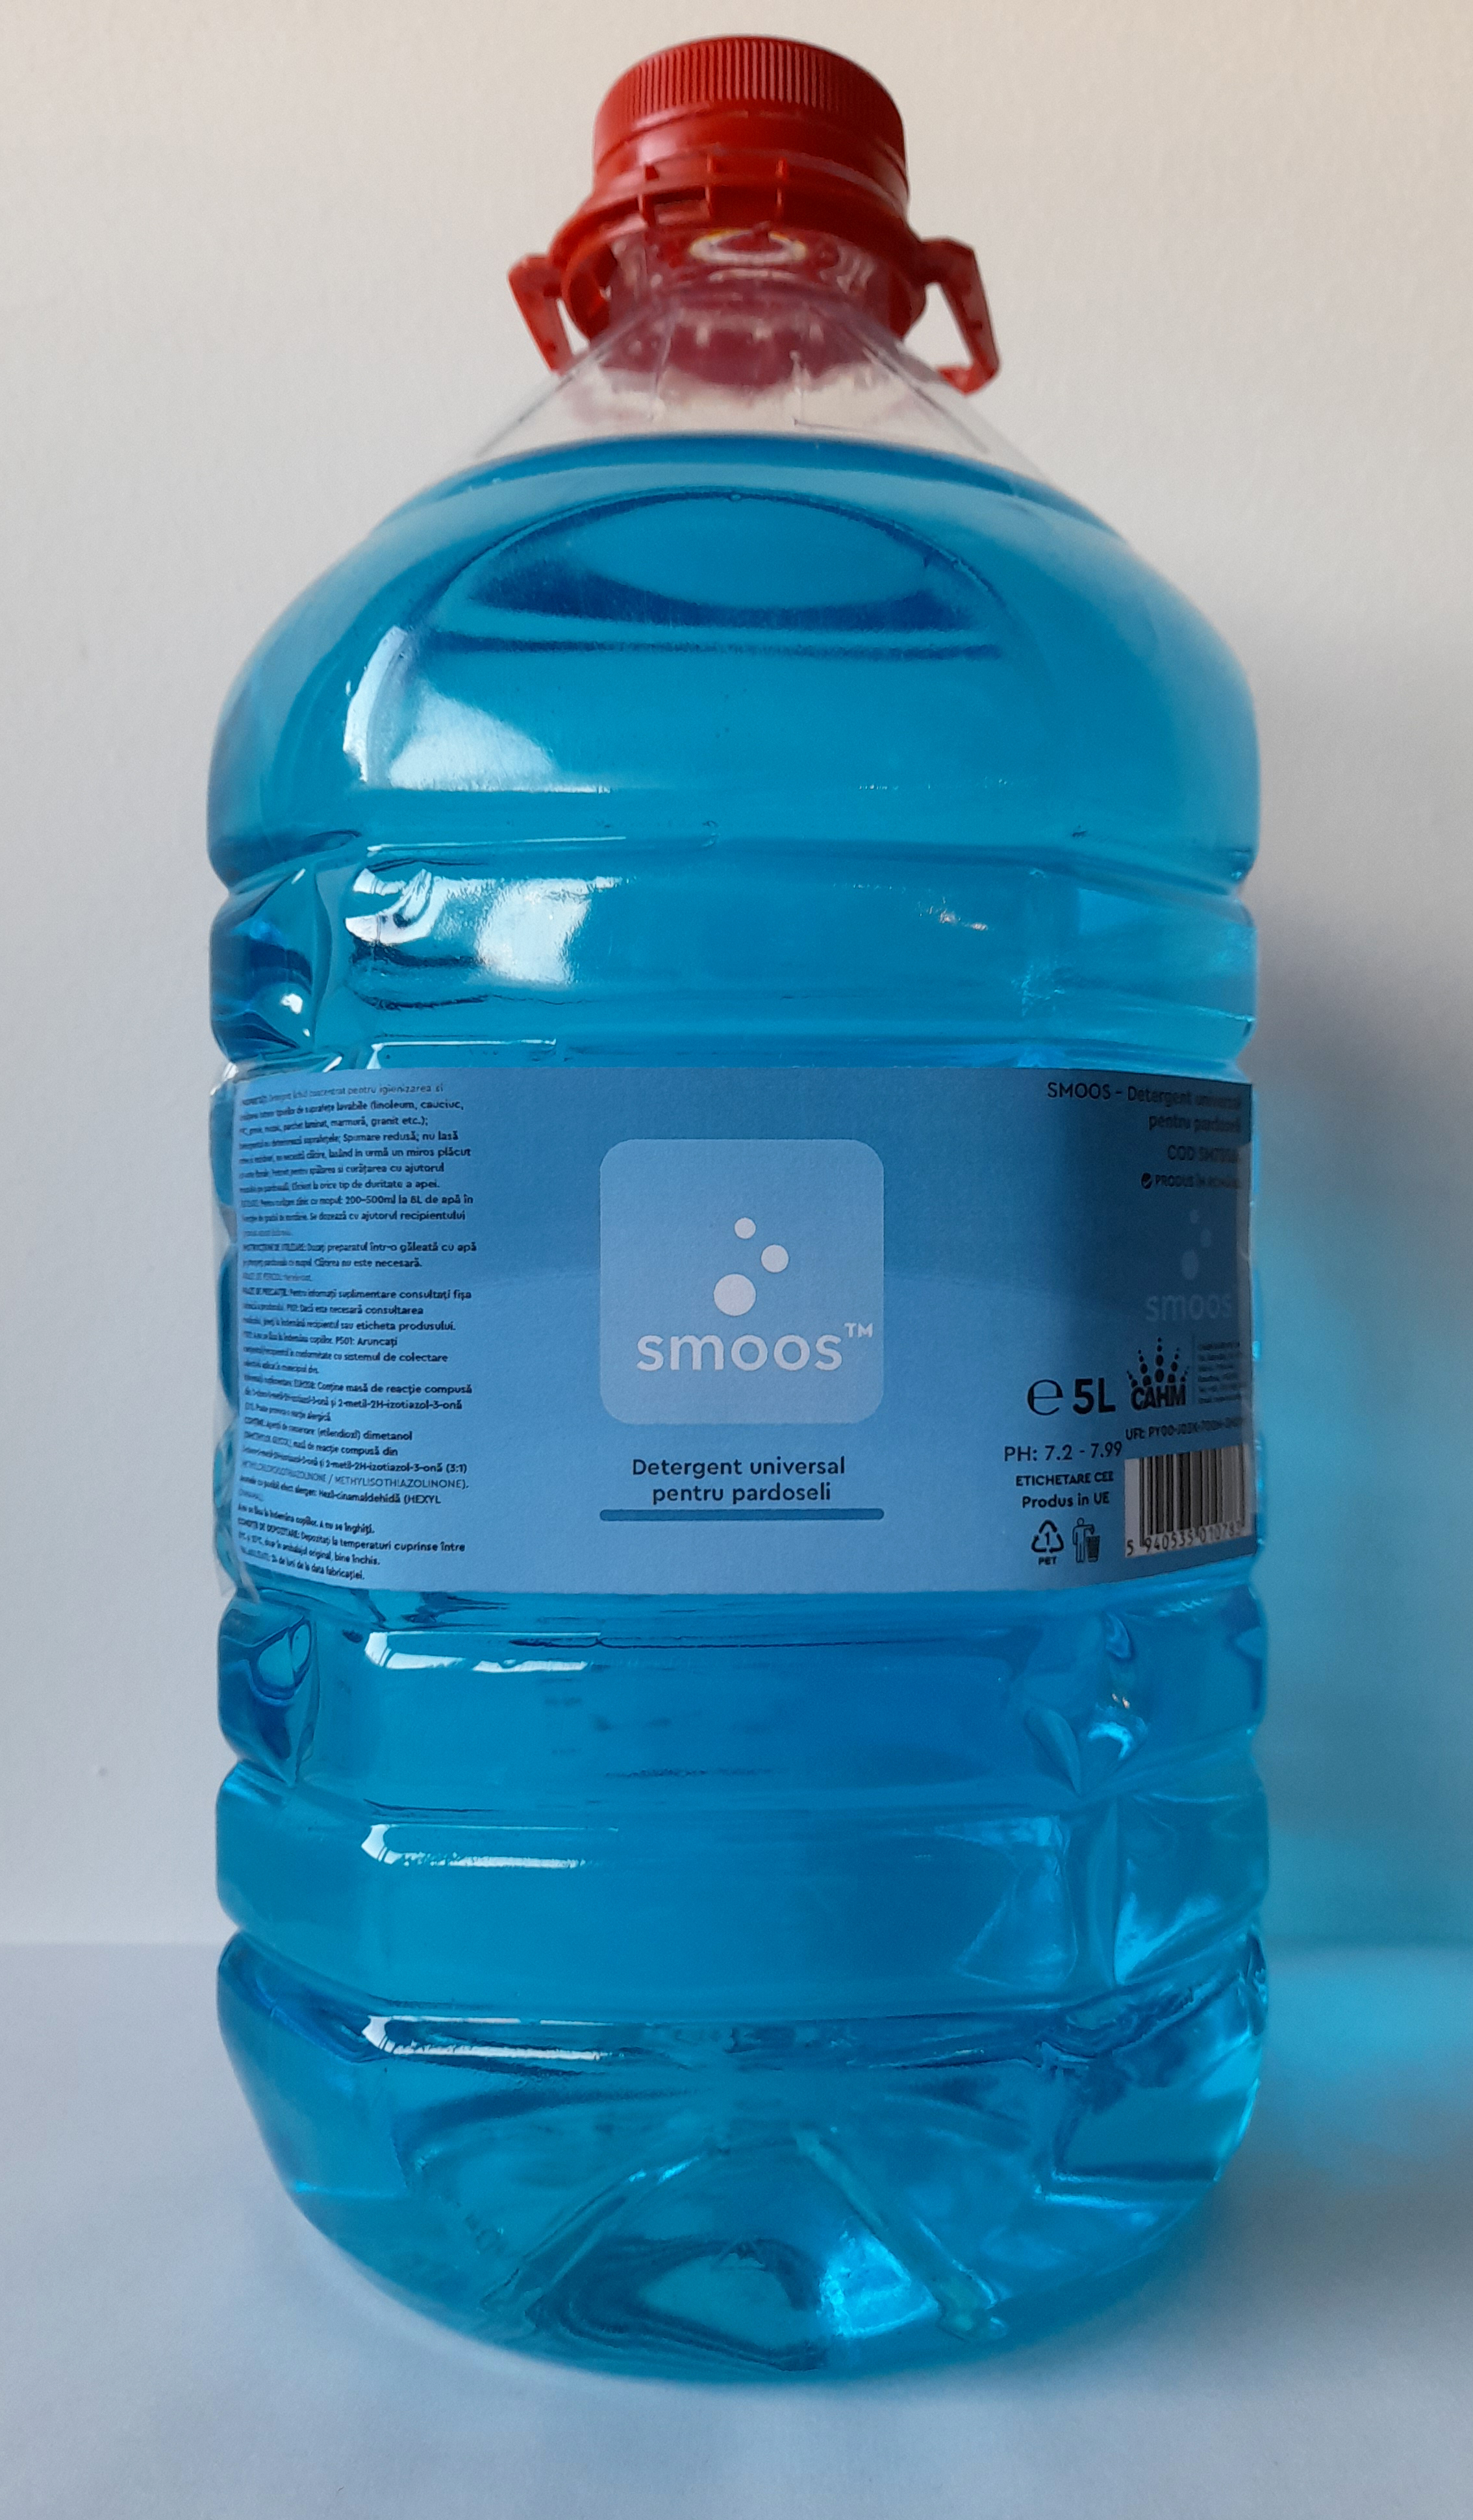 Smoos - Detergent universal pentru pardoseli 5L ( SM785645 )